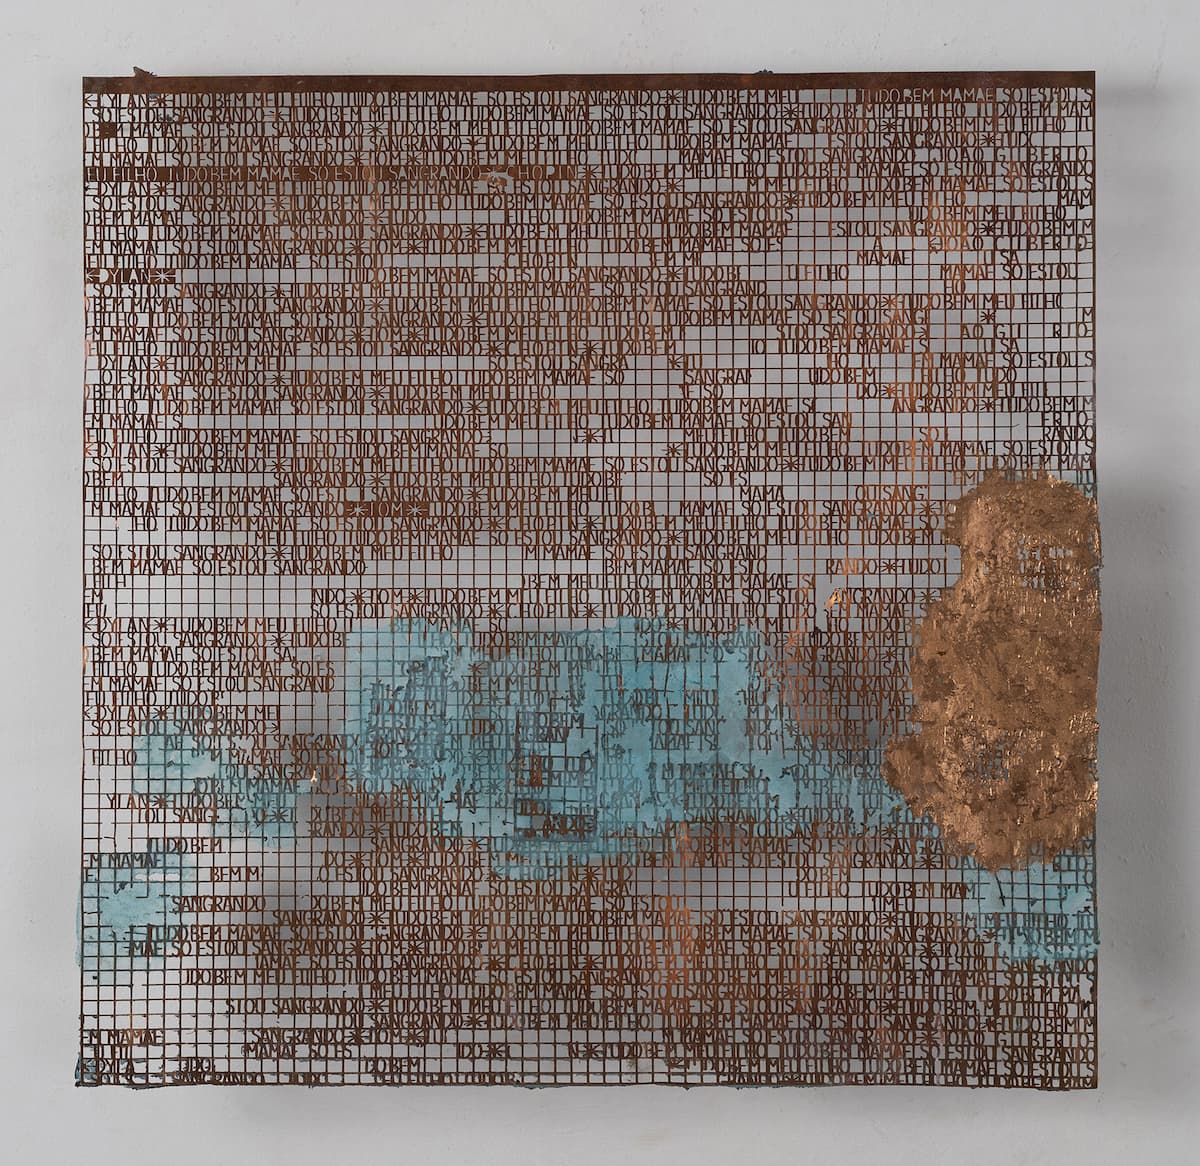 Hilal Sami Hilal, 2020, Untitled, série Tudo Bem, cobre/corrosão e papel feito à mão, 58 x 58 cm. Foto: Bruno Coelho.